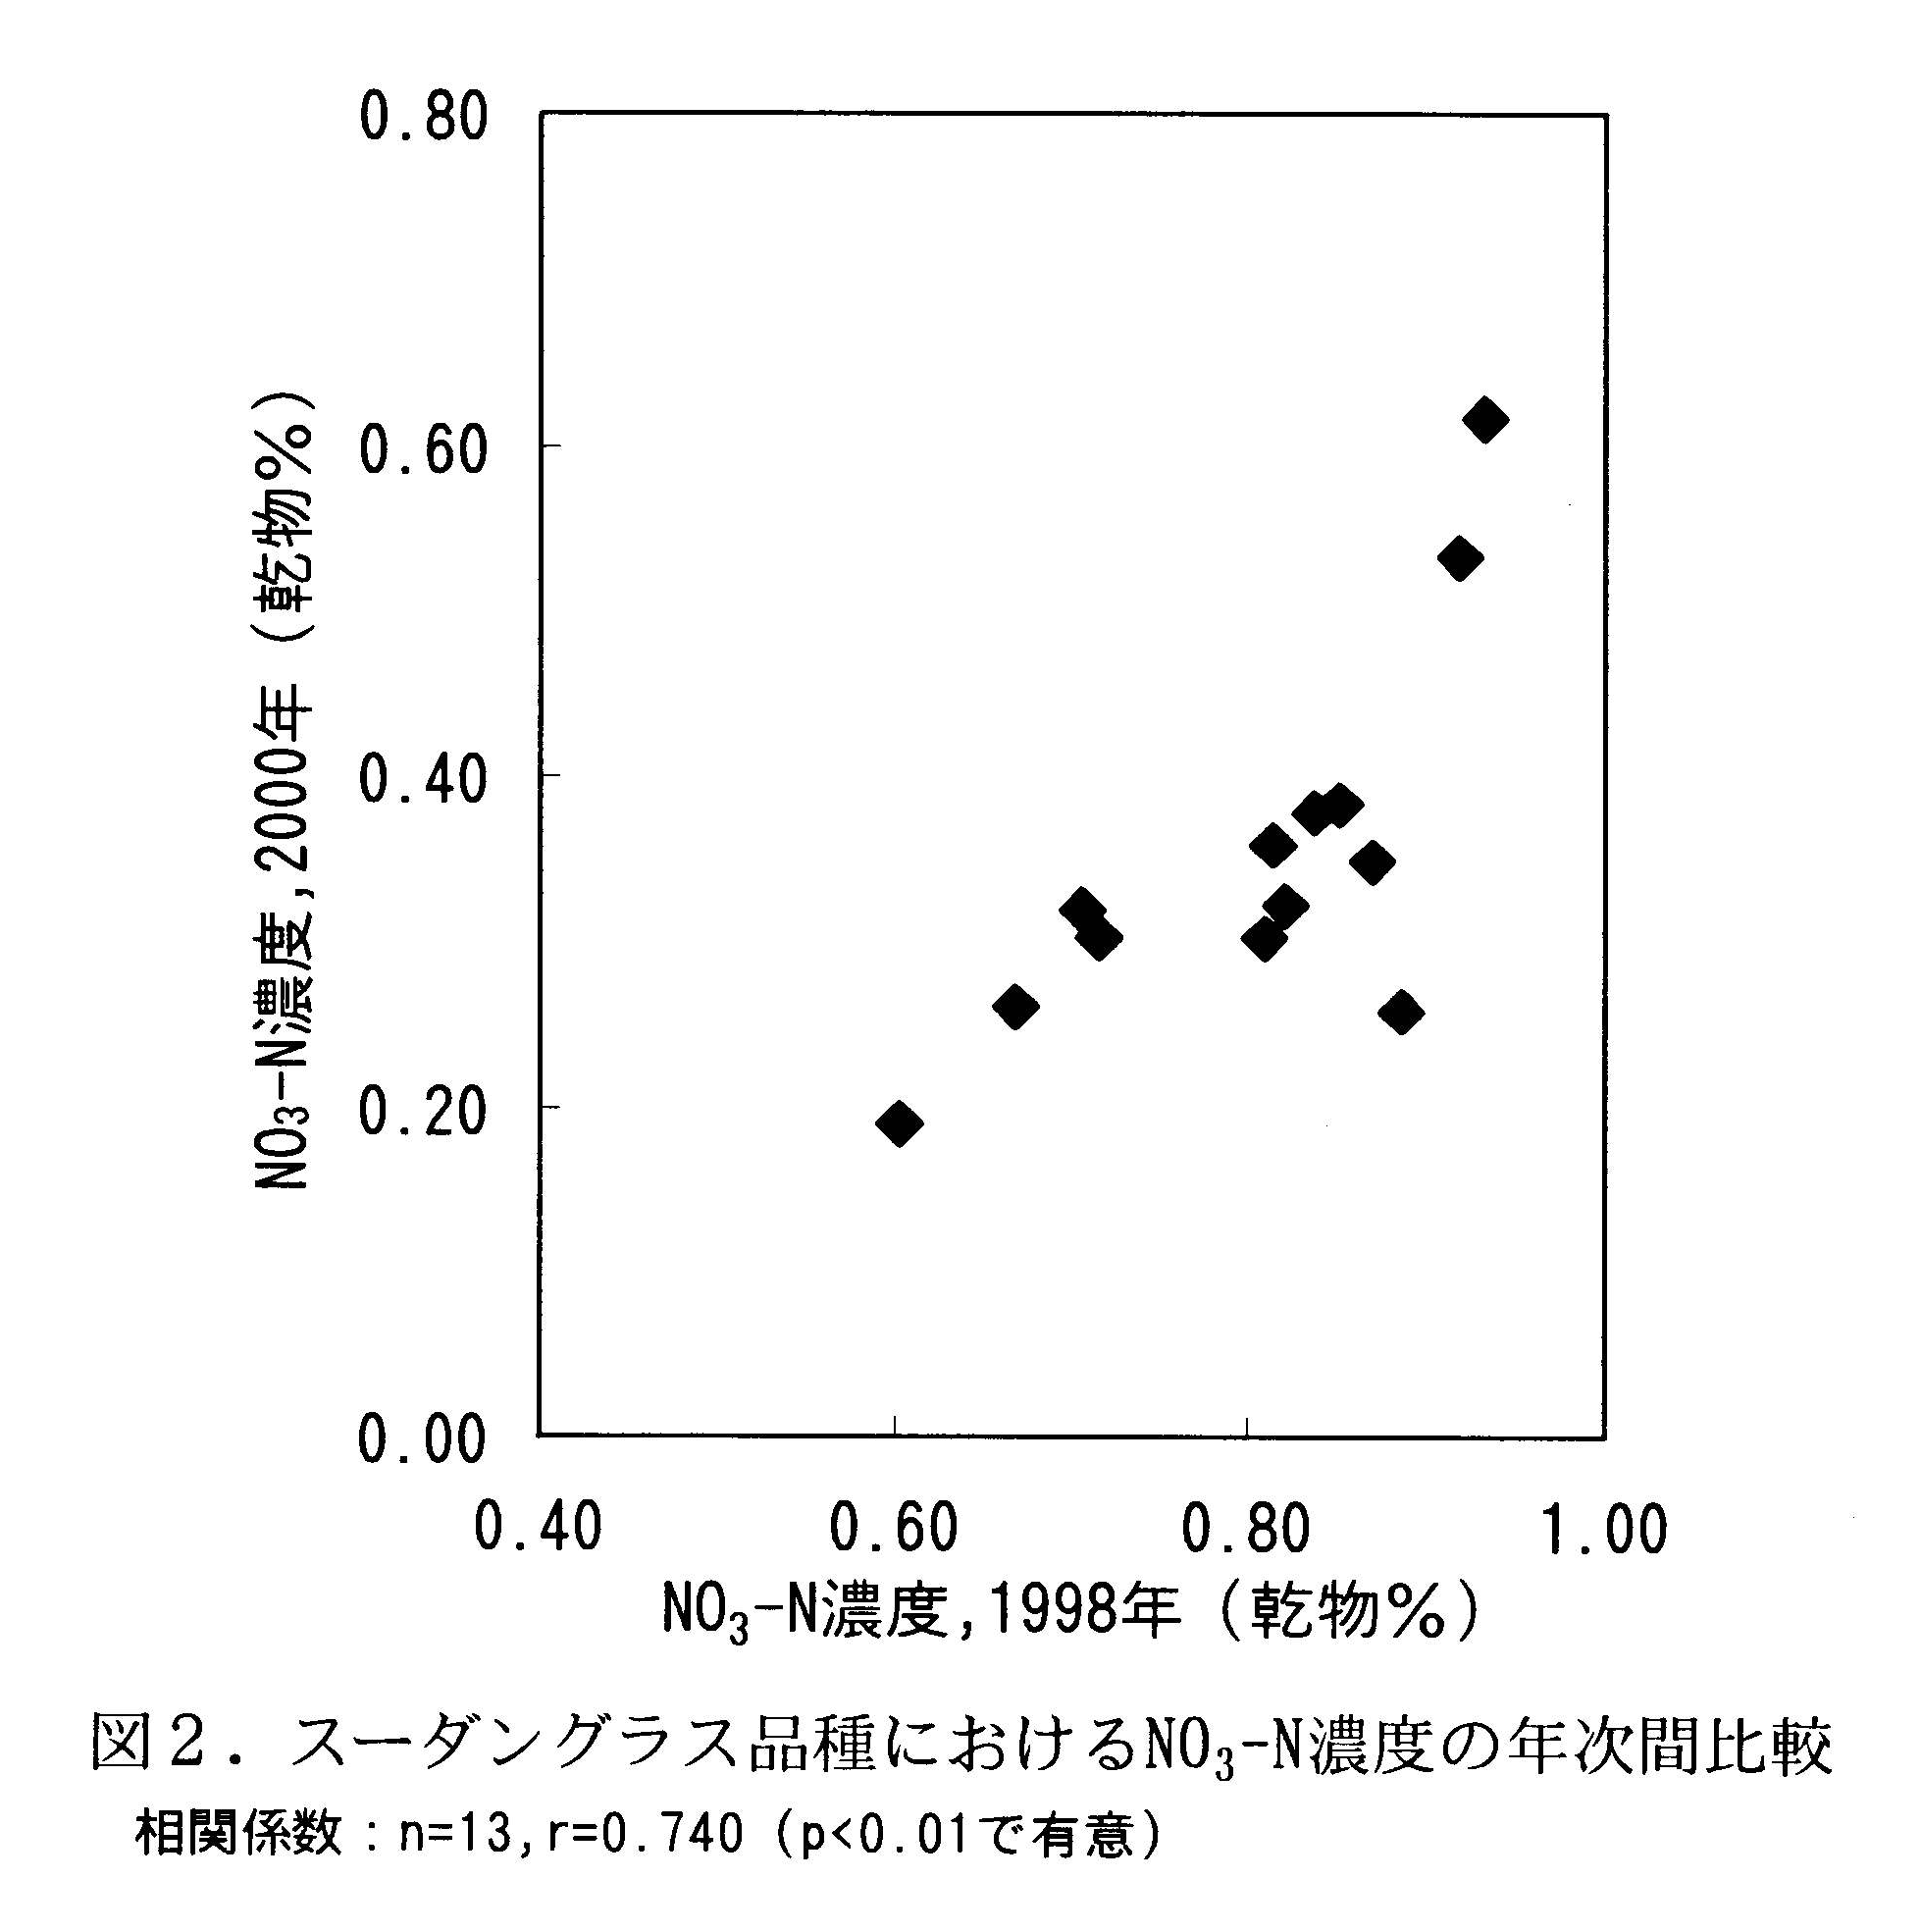 図2 スーダングラス品種におけるNo3-N濃度の年次間比較